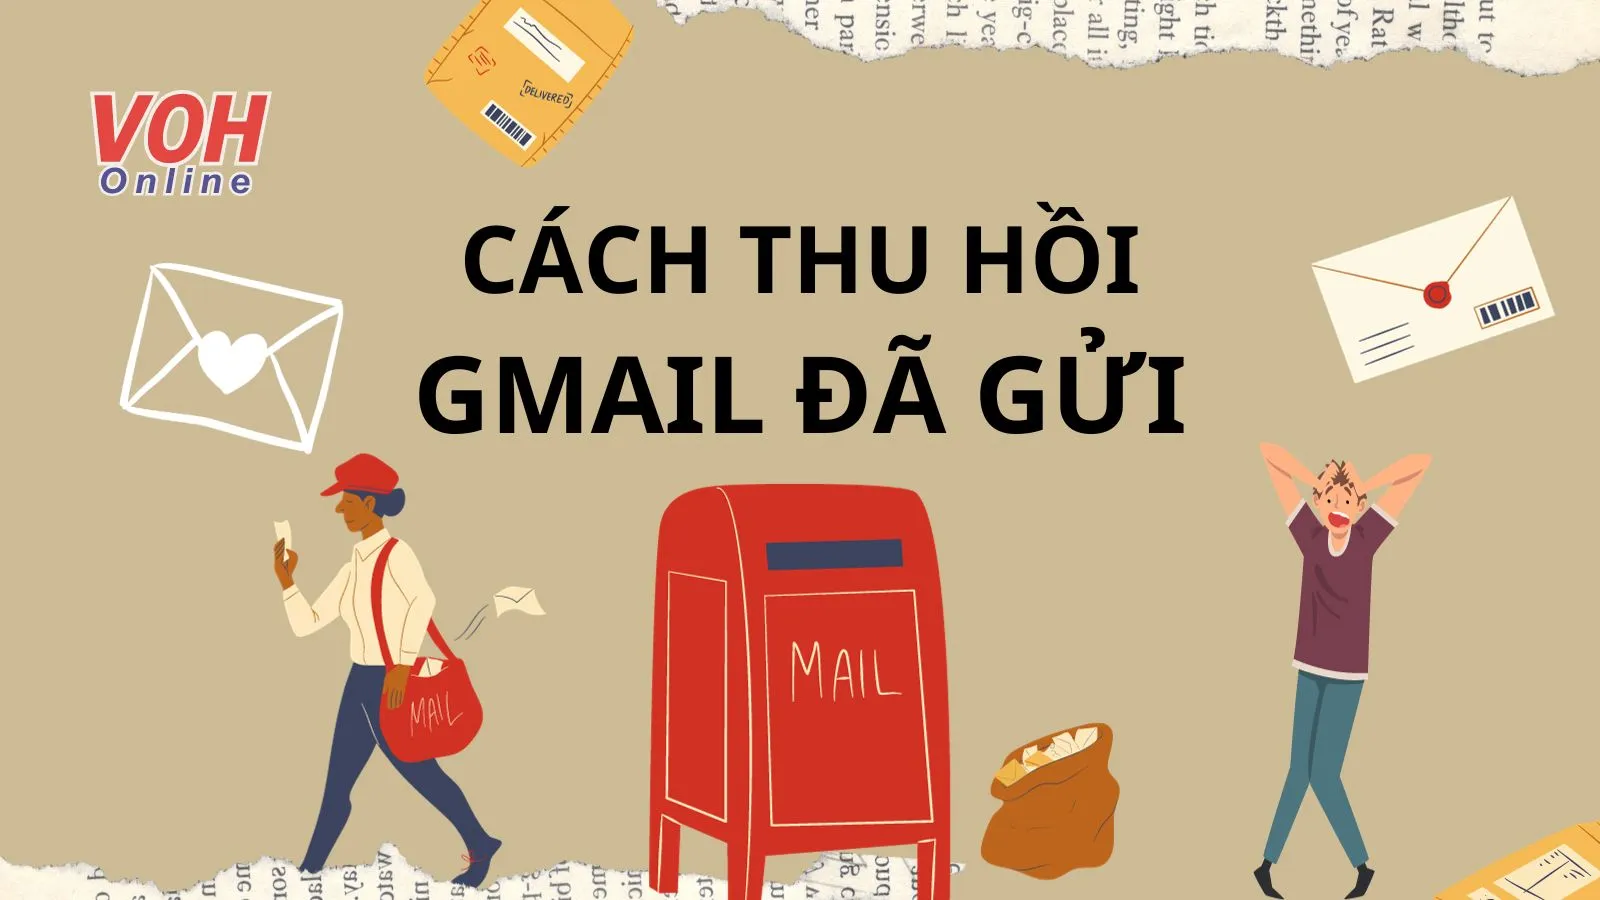 Hướng dẫn thu hồi Gmail đã gửi nhanh chóng, đơn giản nhất